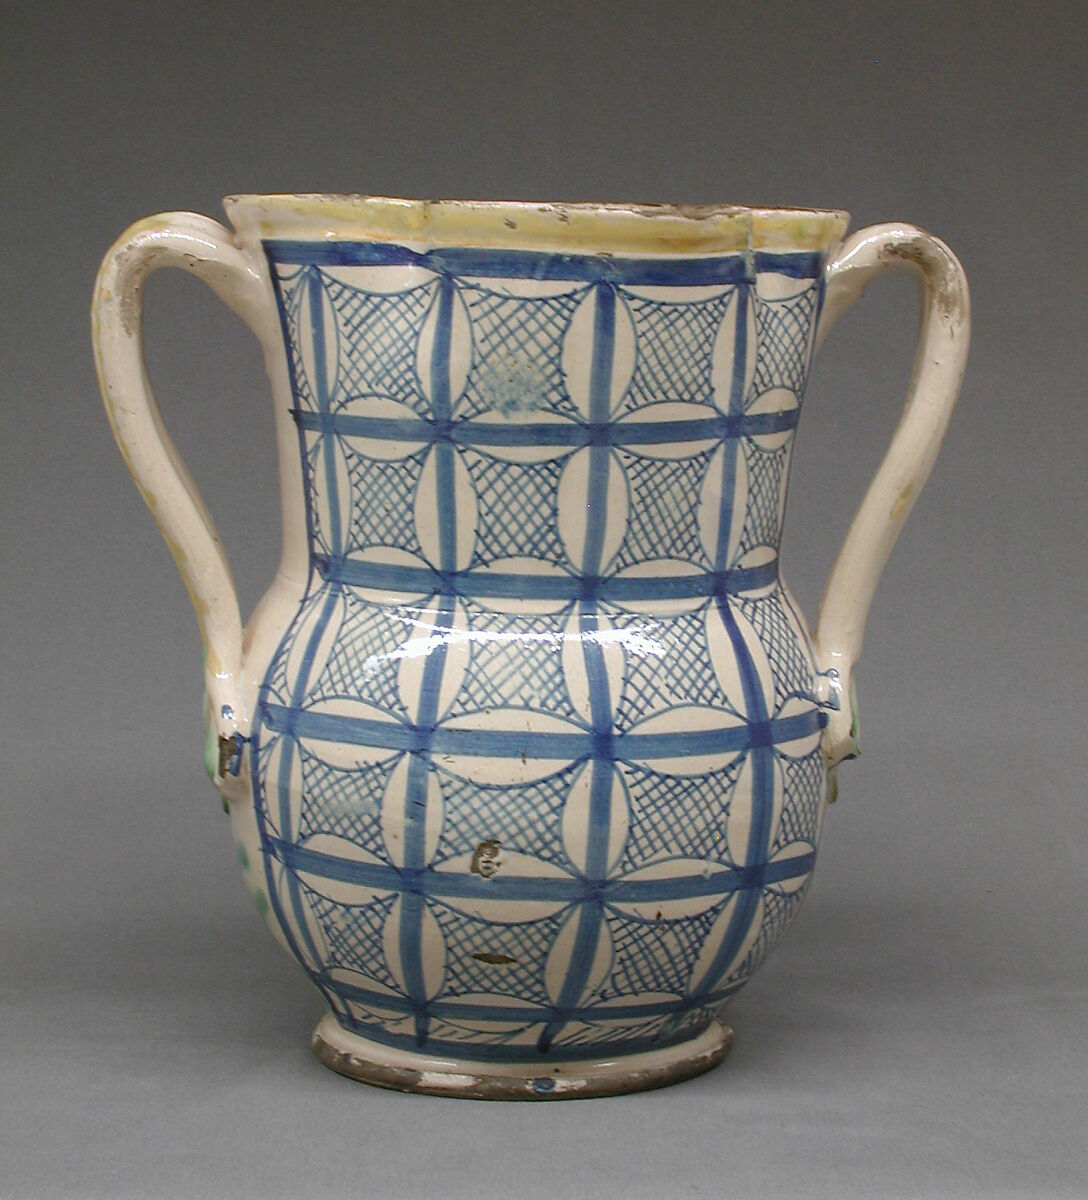 Vase, Glazed earthenware, probably Spanish 